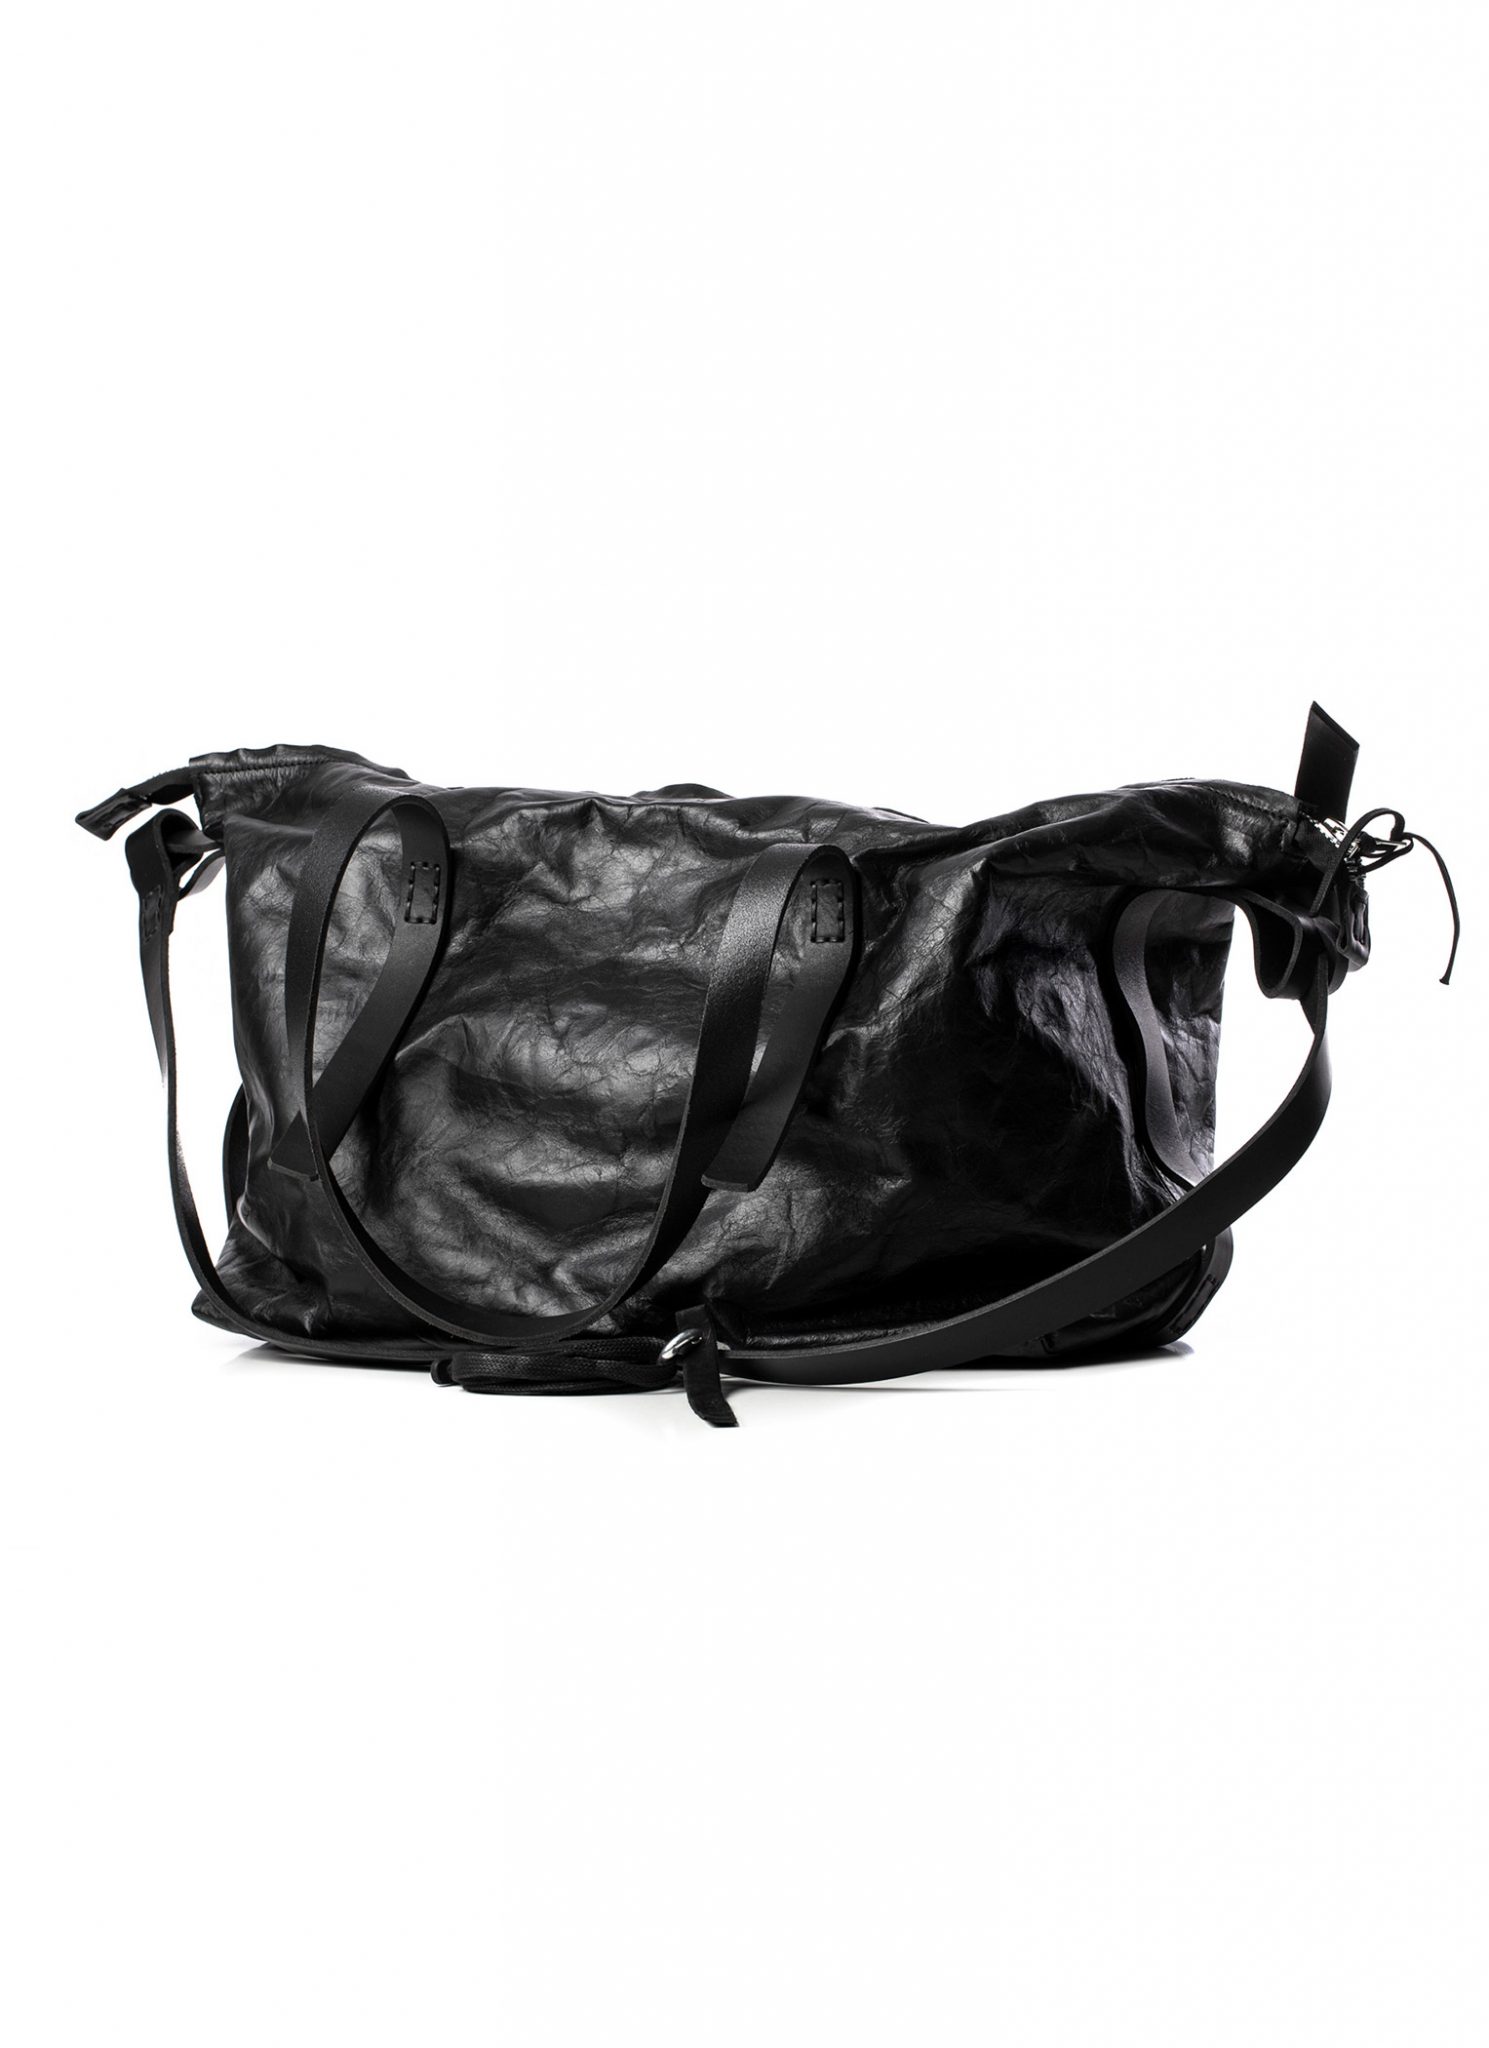 hide-m | BORIS BIDJAN SABERI weekender bag BAG48, black